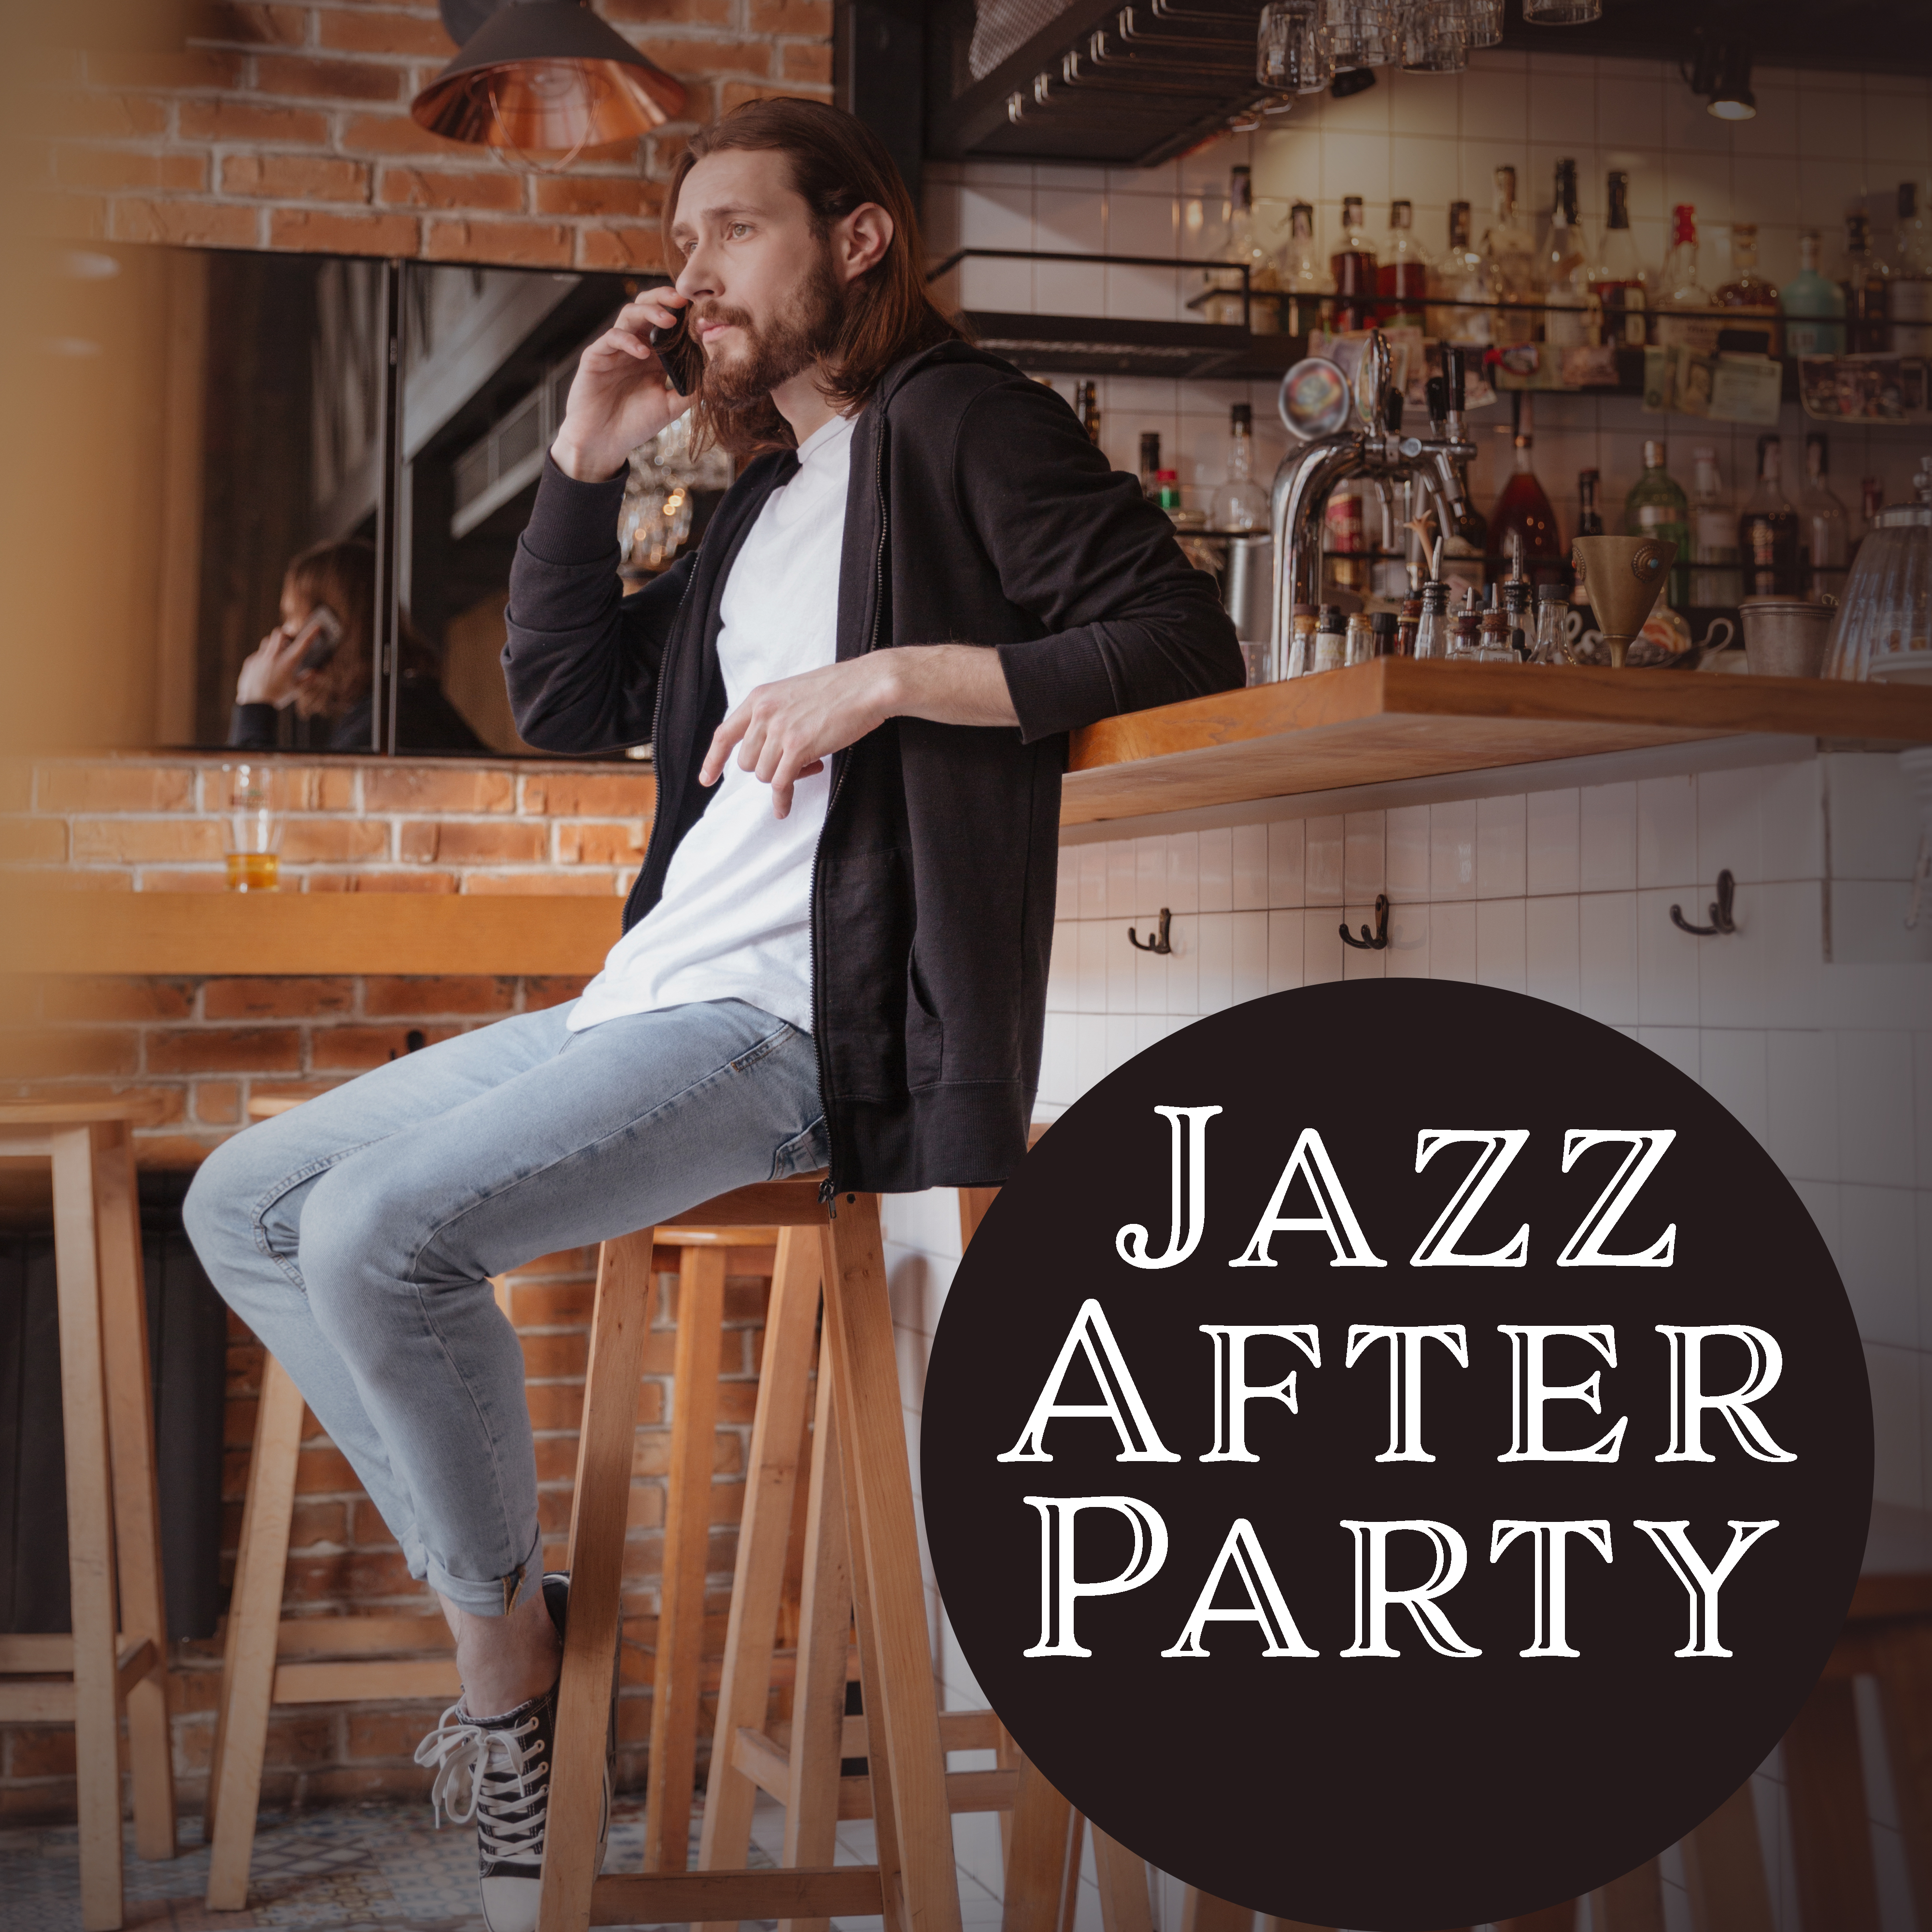 Jazz After Party  Jazz Lounge, Instrumental Music, Jazz 2017, Alternative Club Music